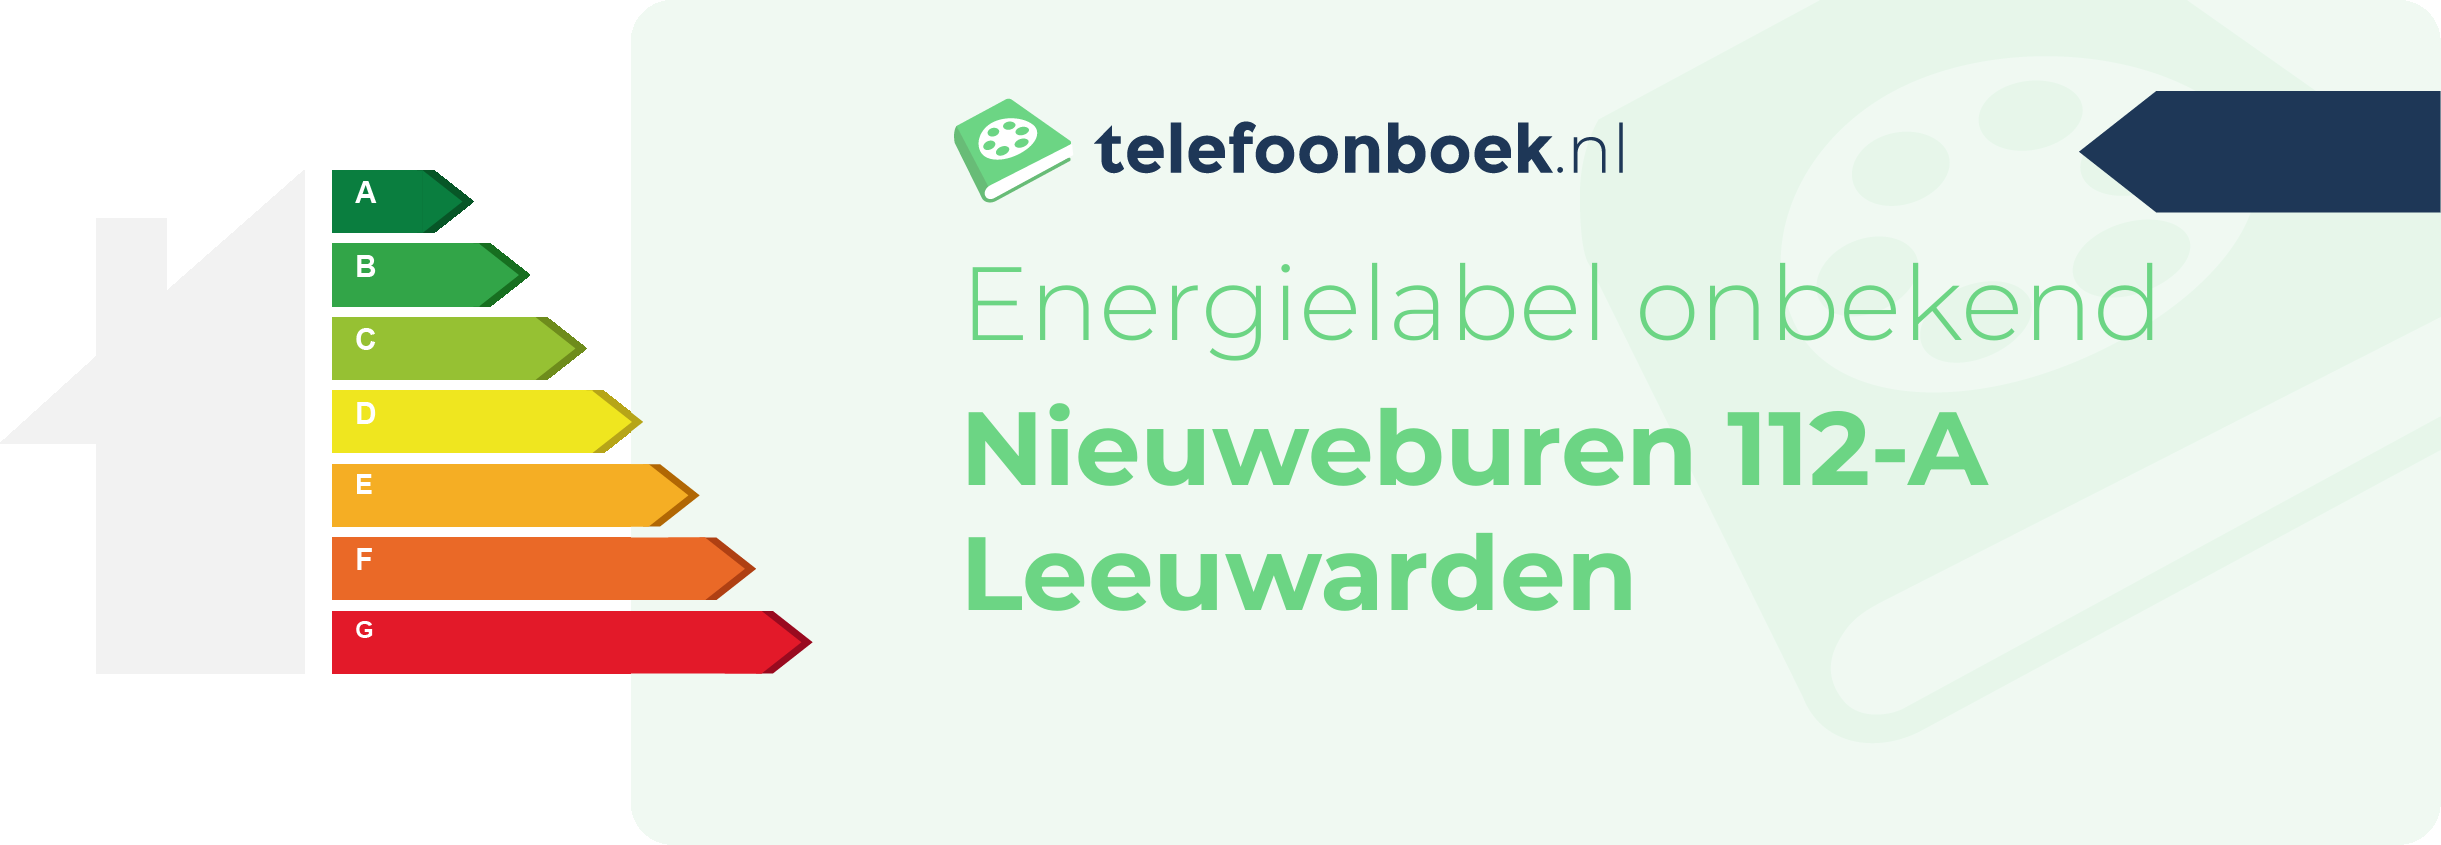 Energielabel Nieuweburen 112-A Leeuwarden